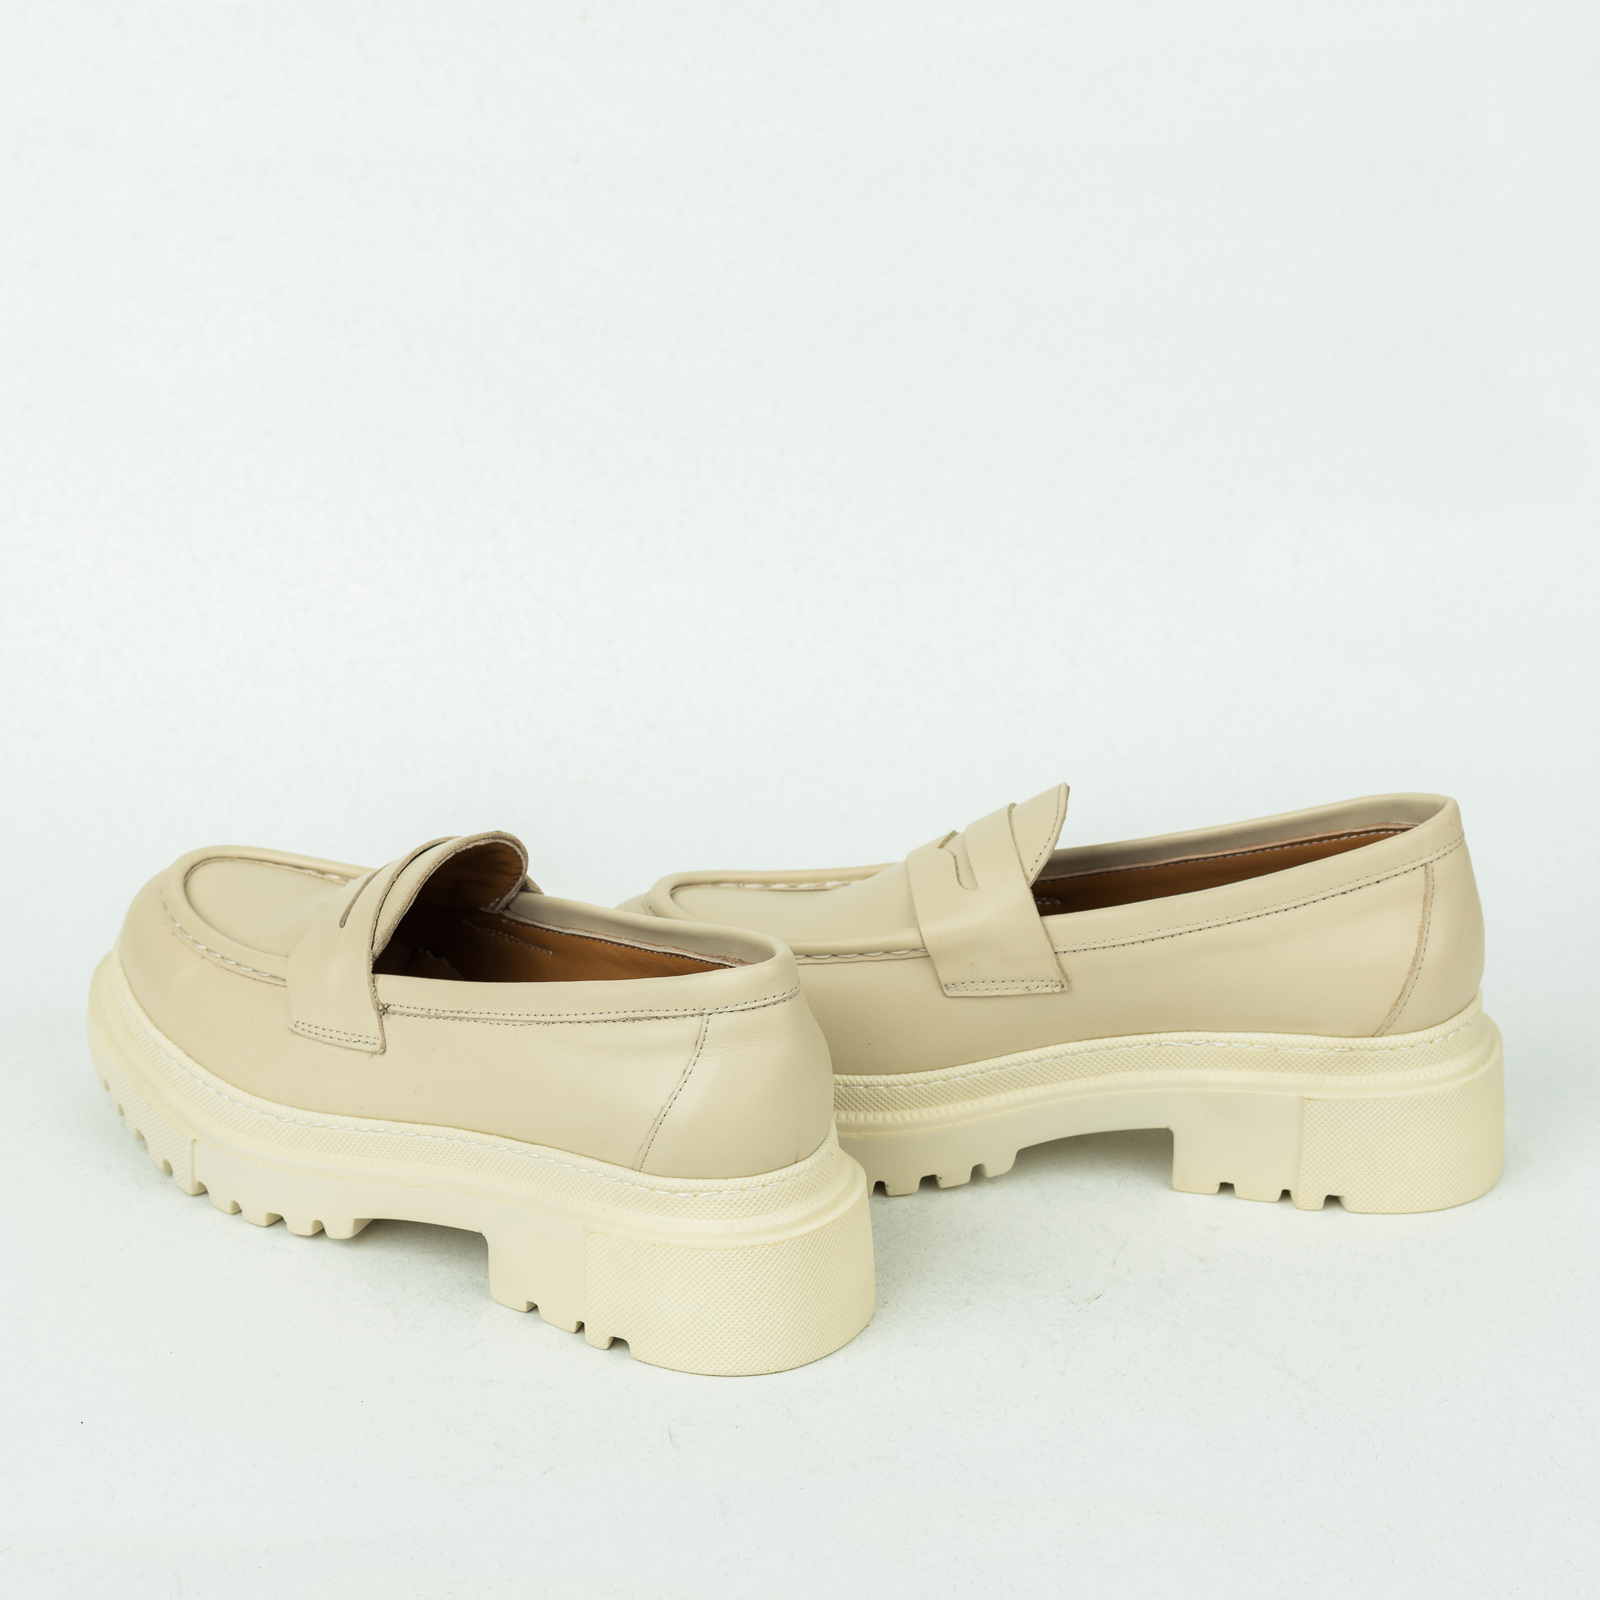 Leather shoes & flats B188 - BEIGE